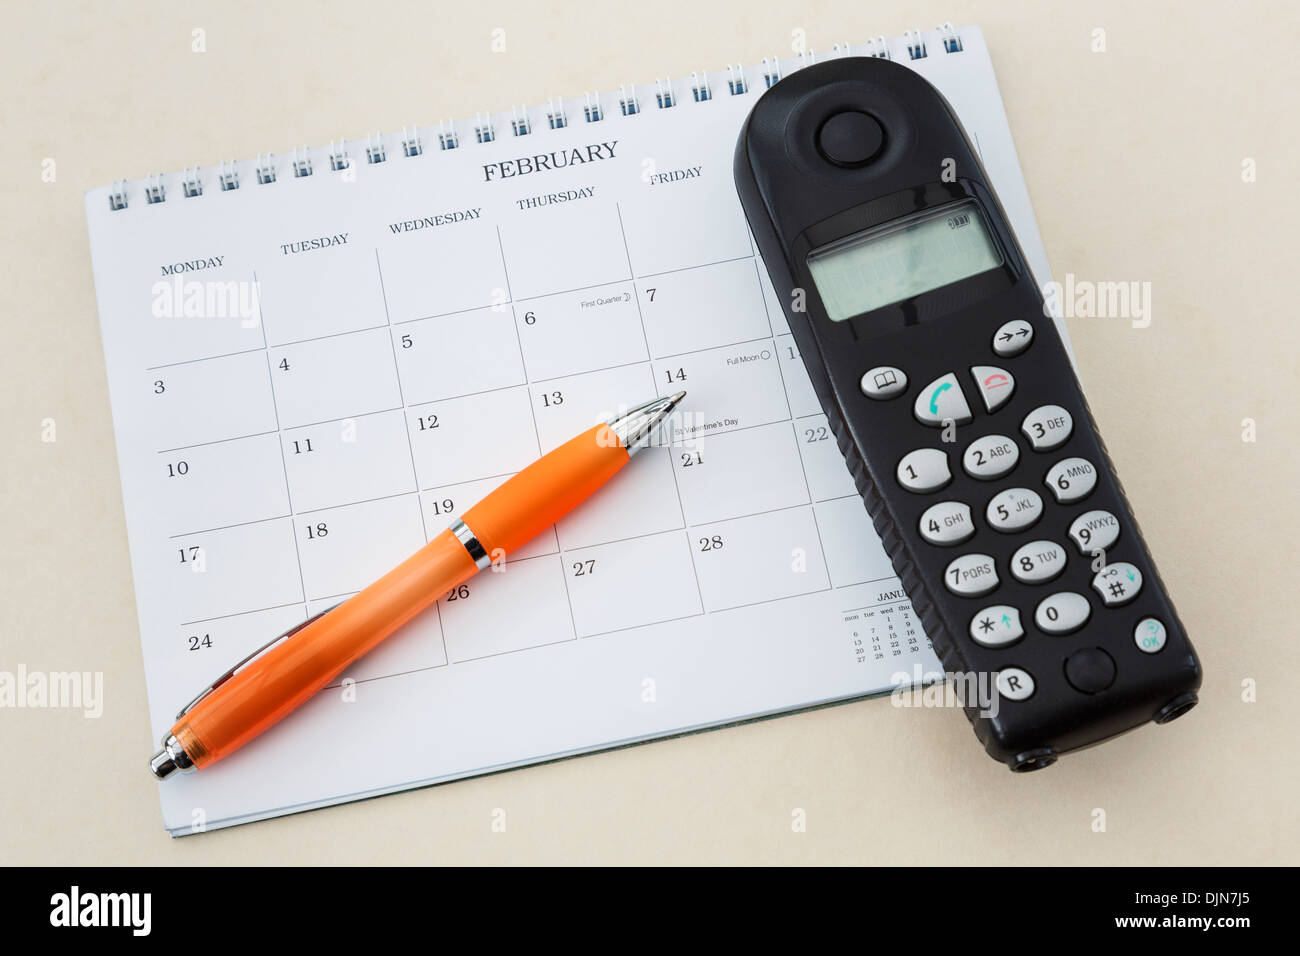 Téléphone sans fil combiné avec un calendrier 2014 vierge et un stylo pointant vers la Saint-Valentin le 14 février Banque D'Images